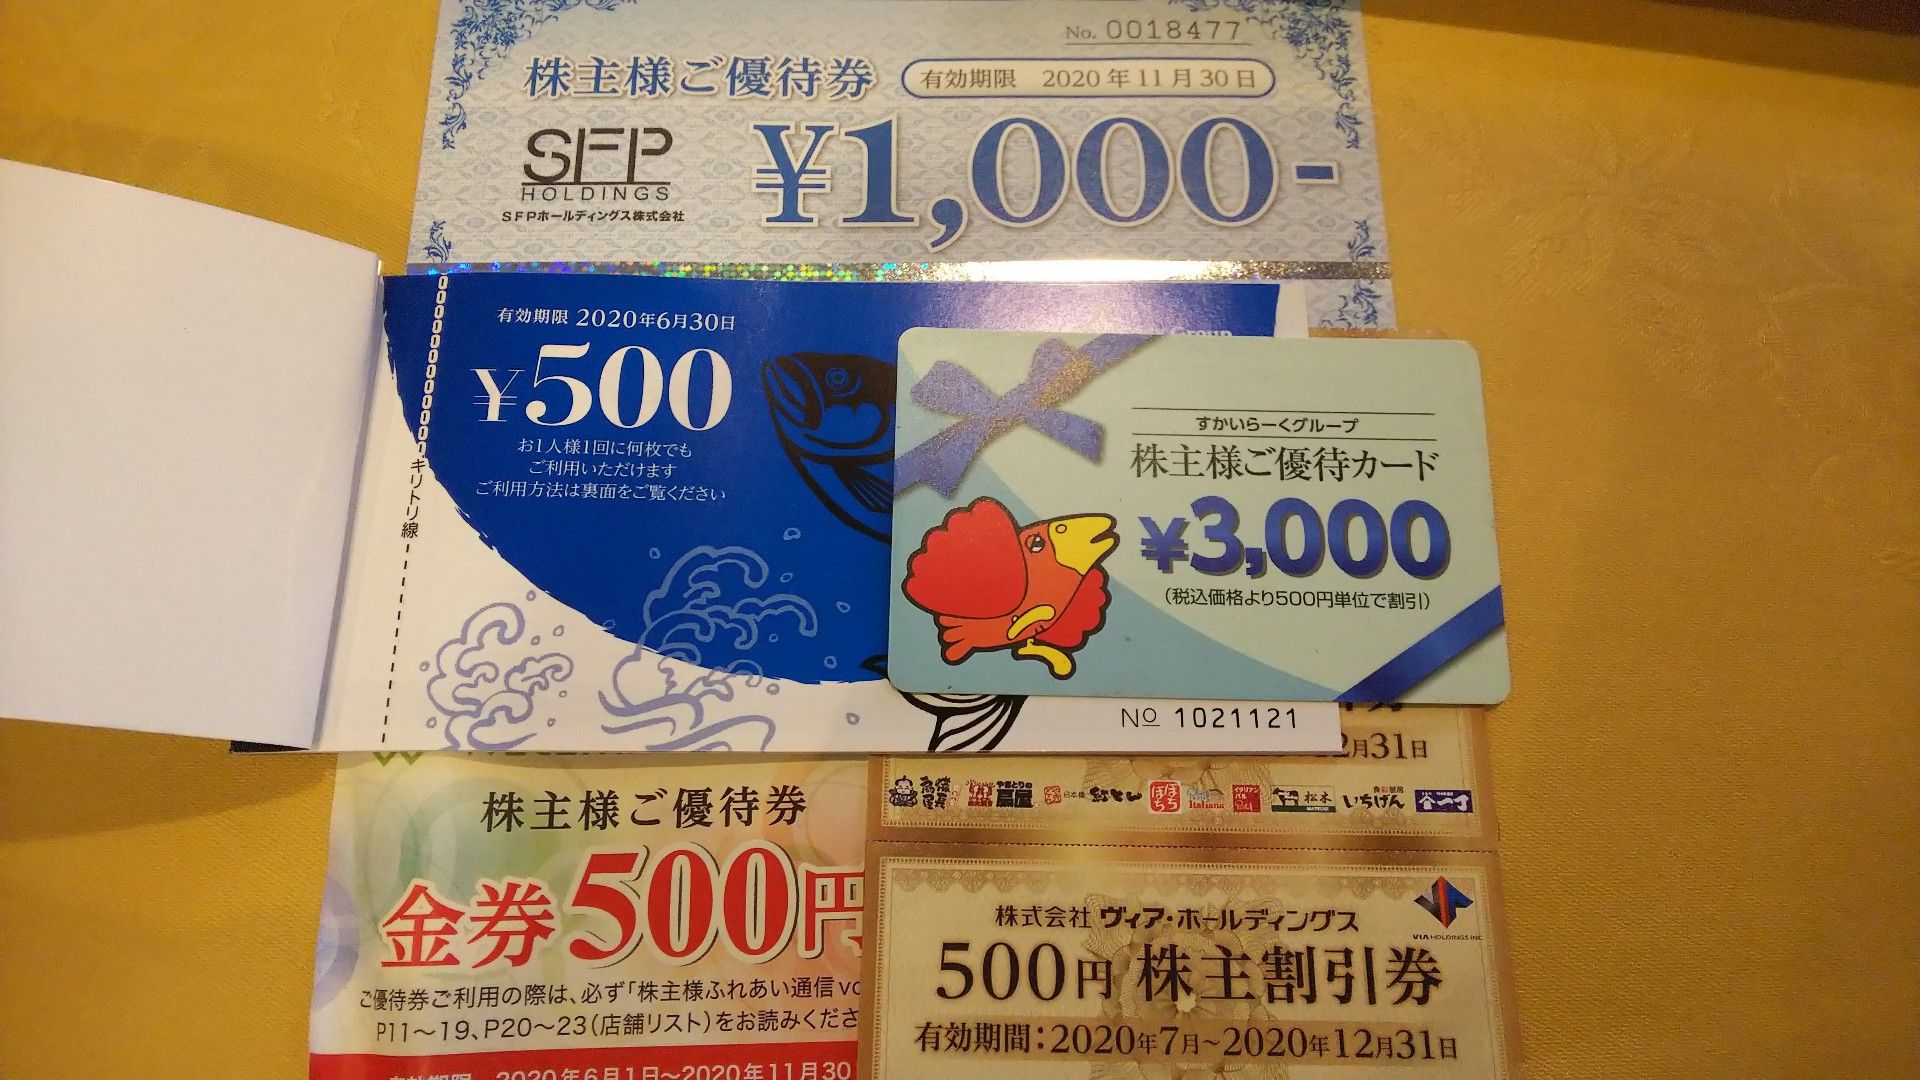 独特な 2.5万円分宿泊券「ISHINOYA熱海」「石のや伊豆長岡」 | artfive